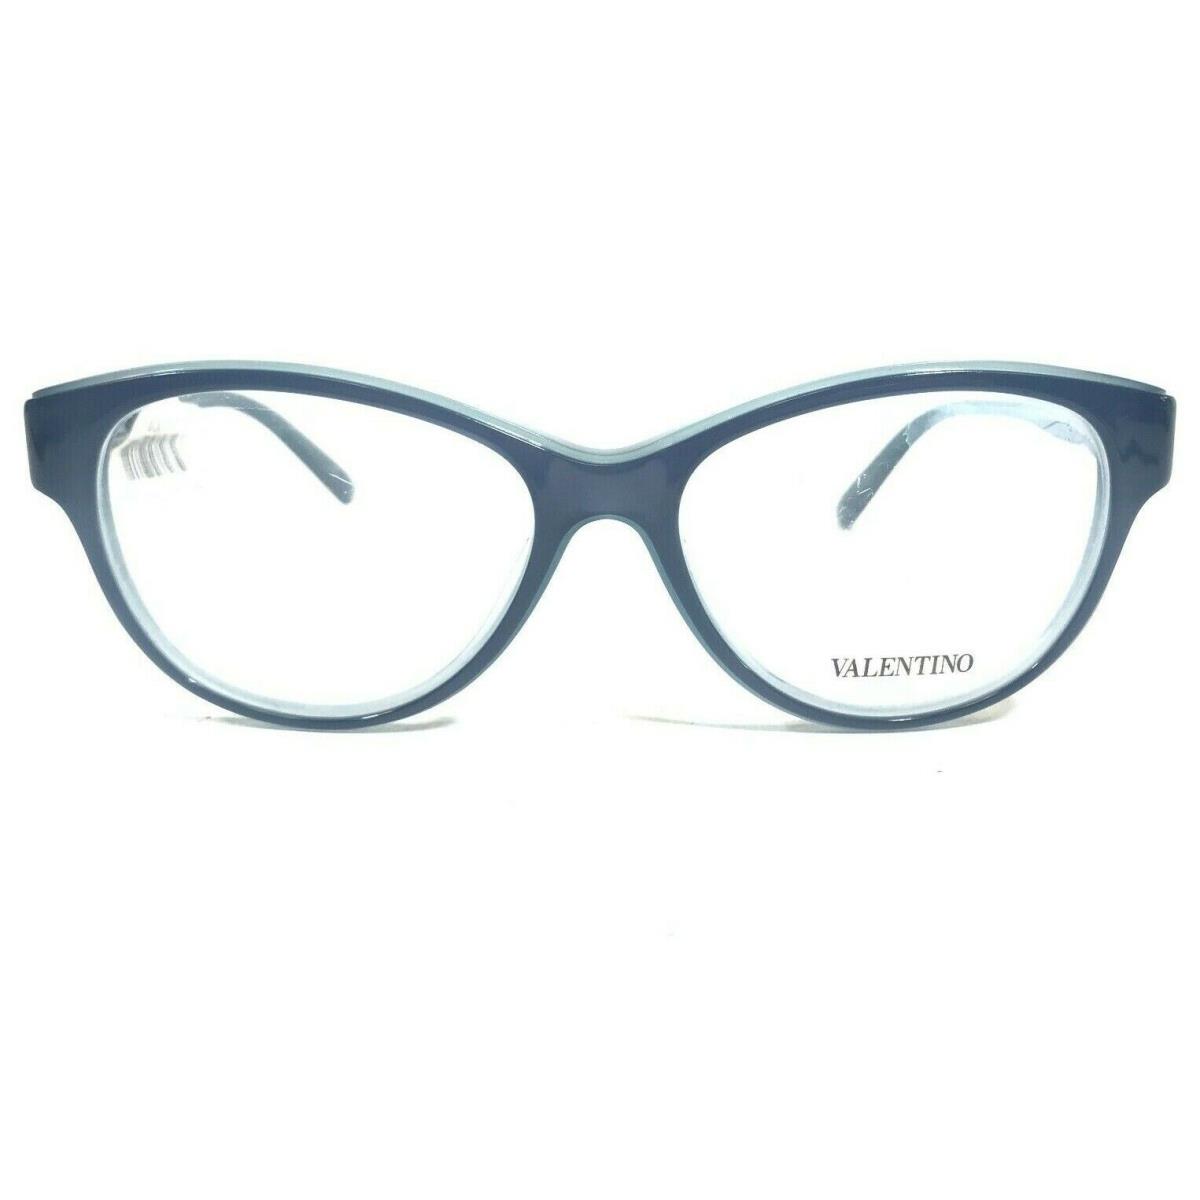 Valentino V2647 405 Eyeglasses Frames Clear Blue Round Cat Eye 53-16-135